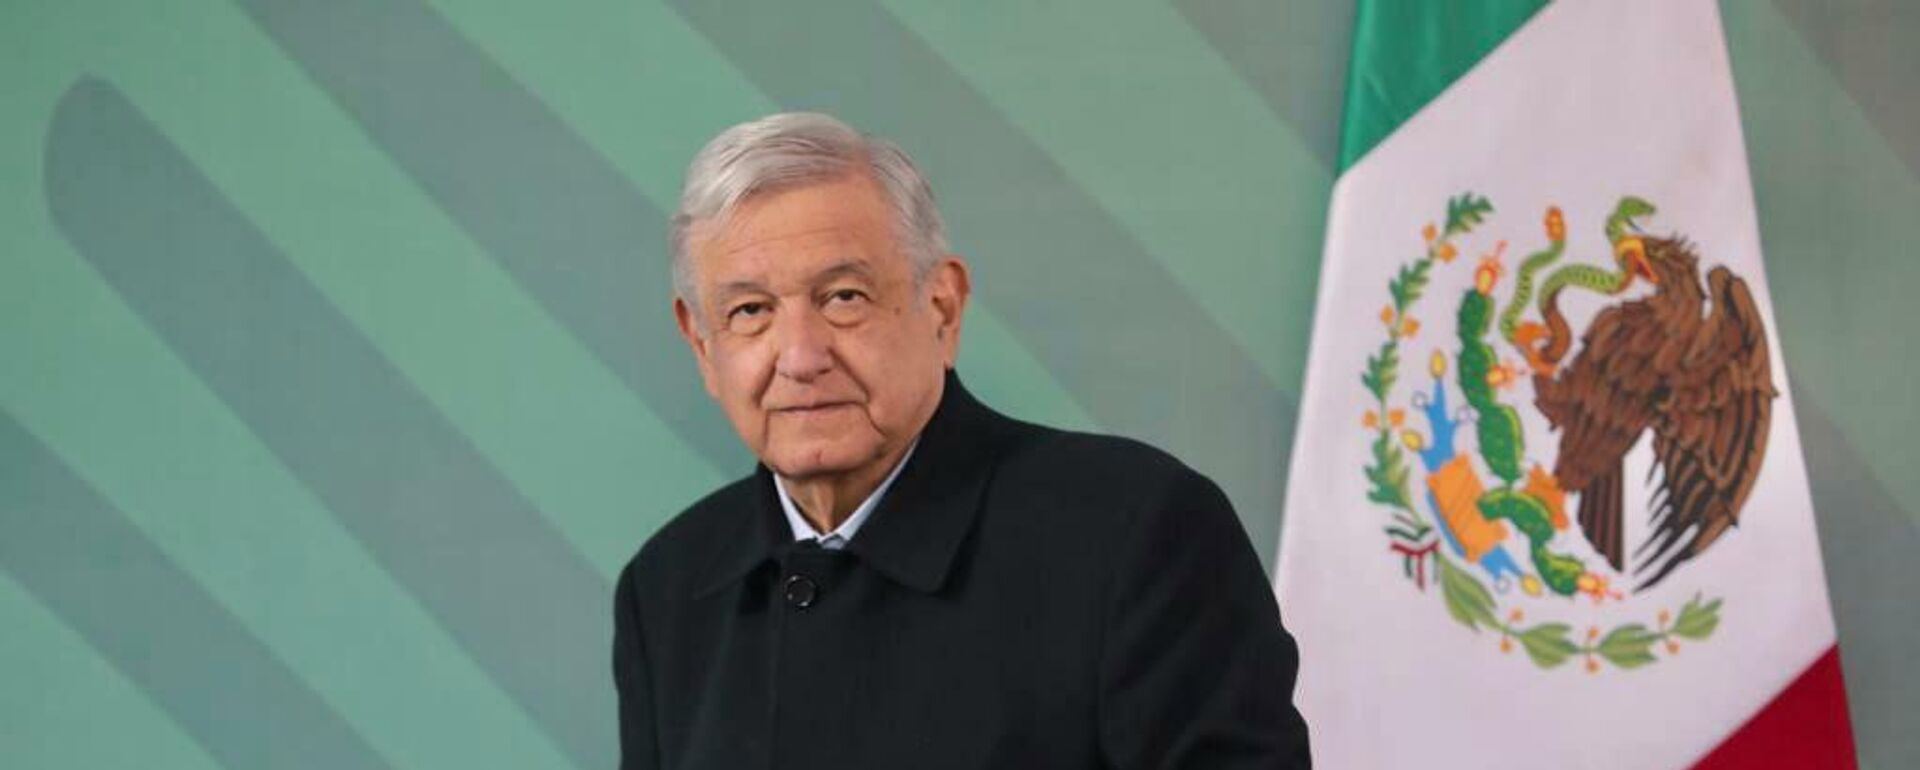 Andrés Manuel López Obrador, presidente de México - Sputnik Mundo, 1920, 03.12.2021